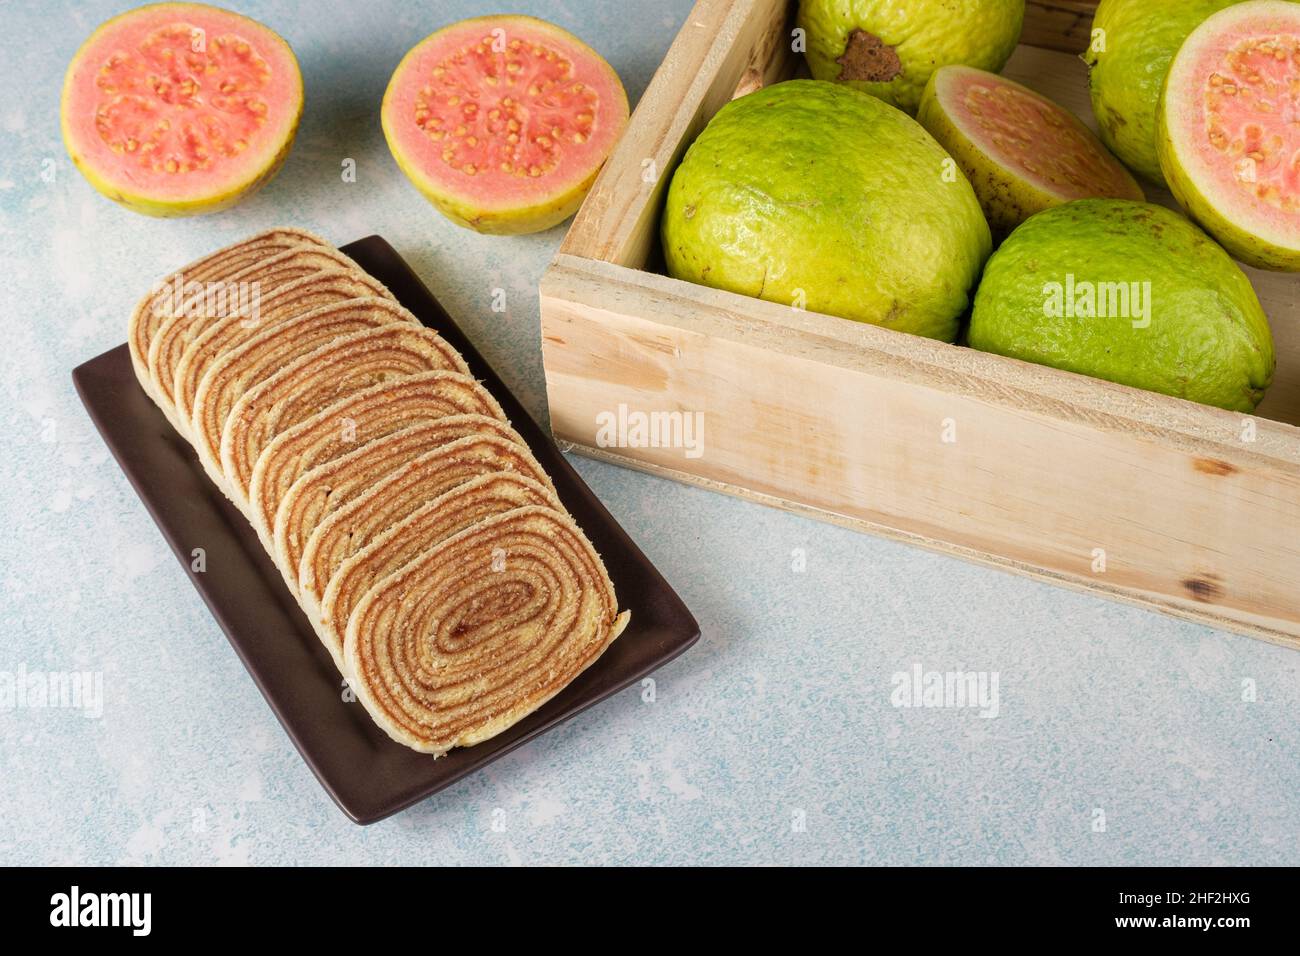 In Scheiben geschnittener Bolo de rolo (Rollkuchen) neben einer Schachtel mit Guavas. Stockfoto